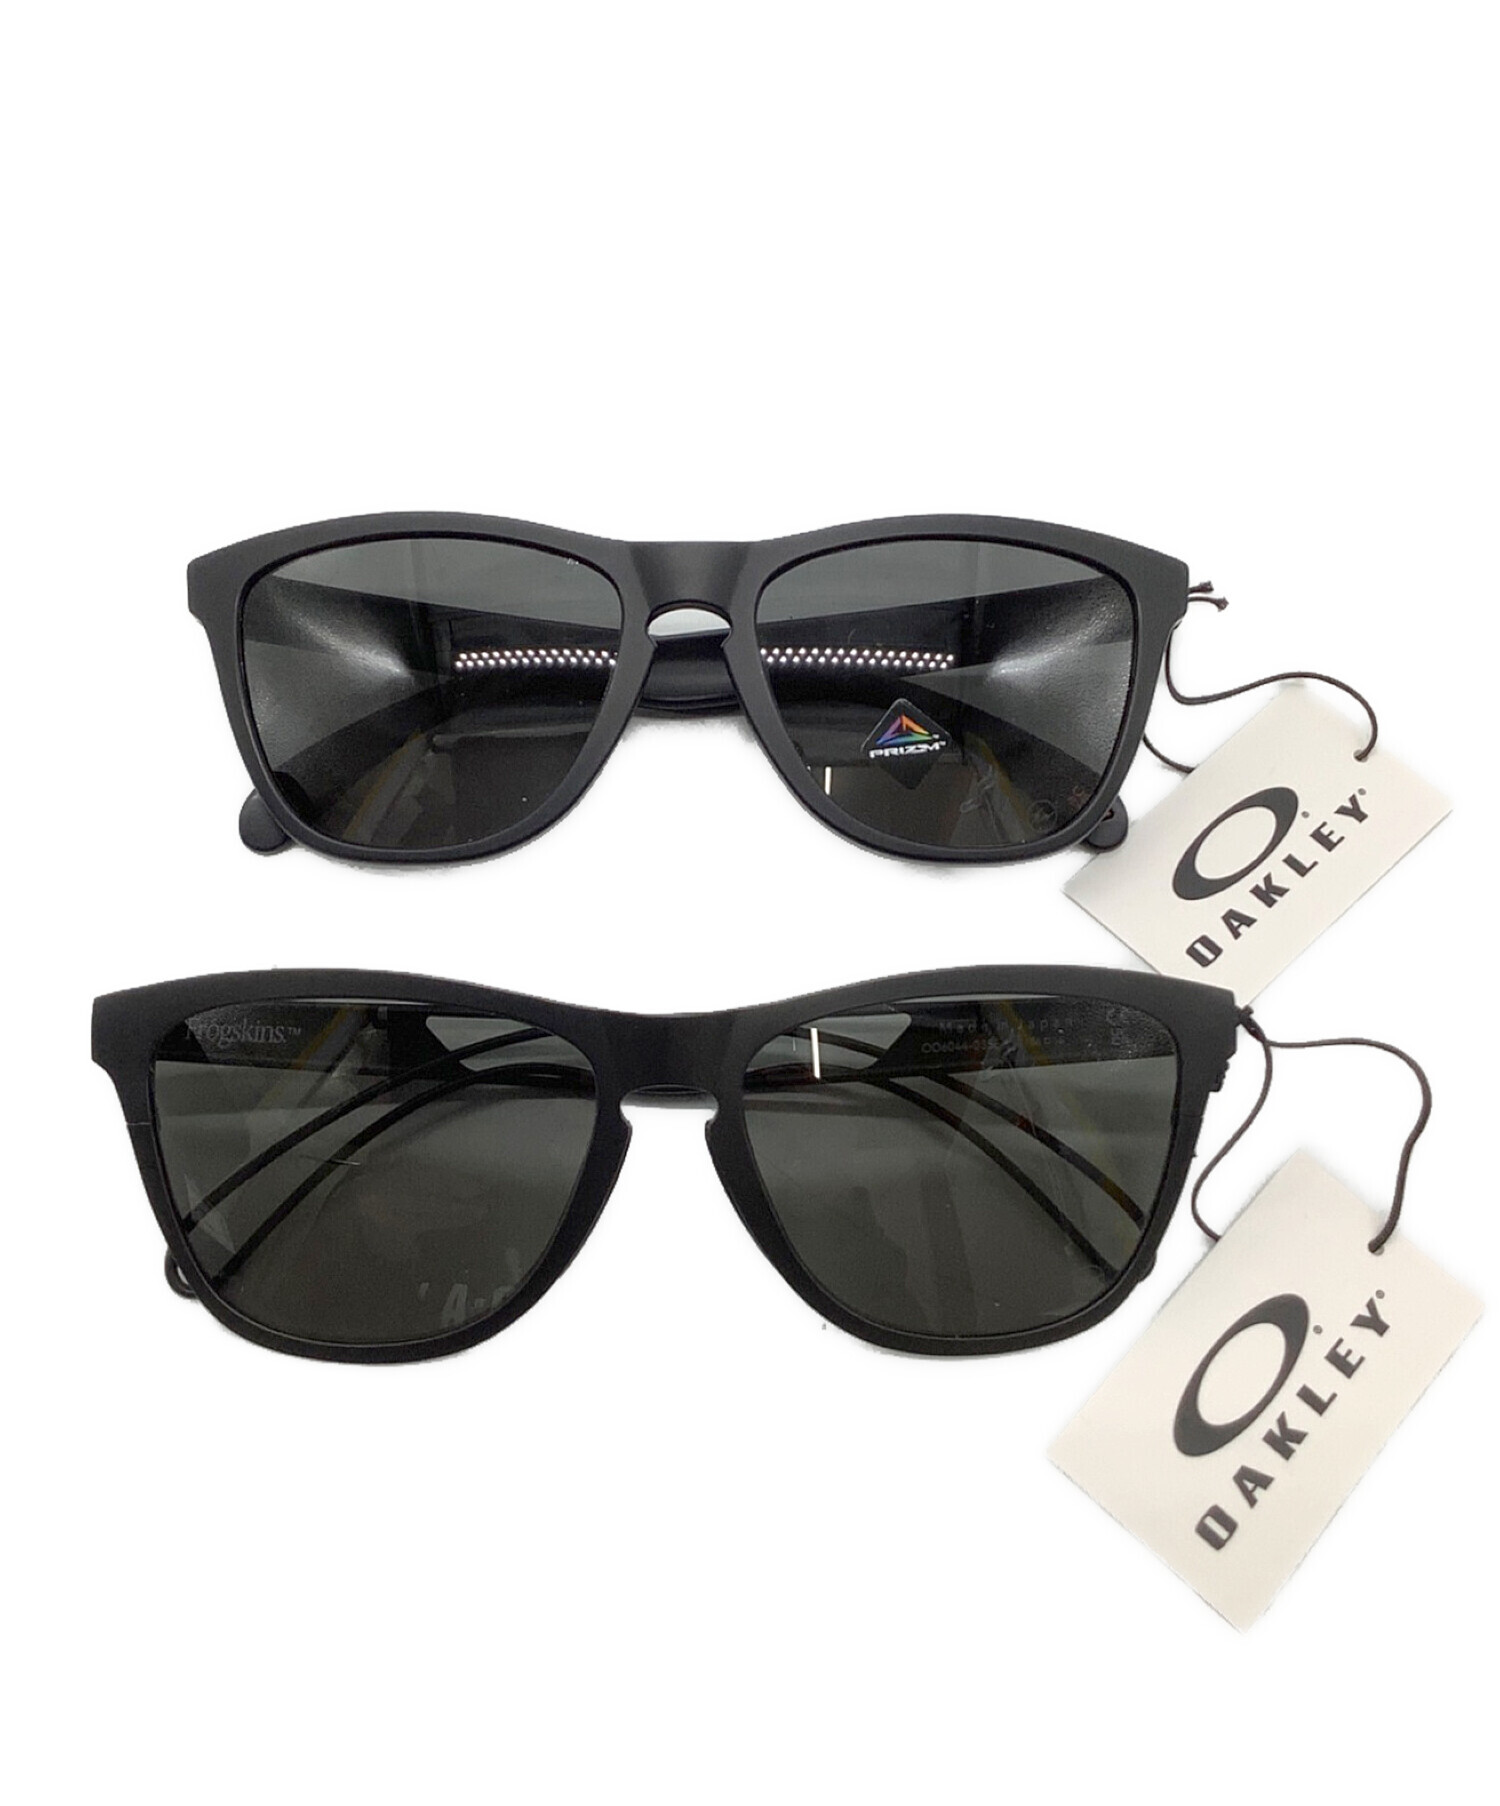 レンズカラーグレー■OAKLEY × FRAGMENT オークリー フラグメント サングラス 眼鏡